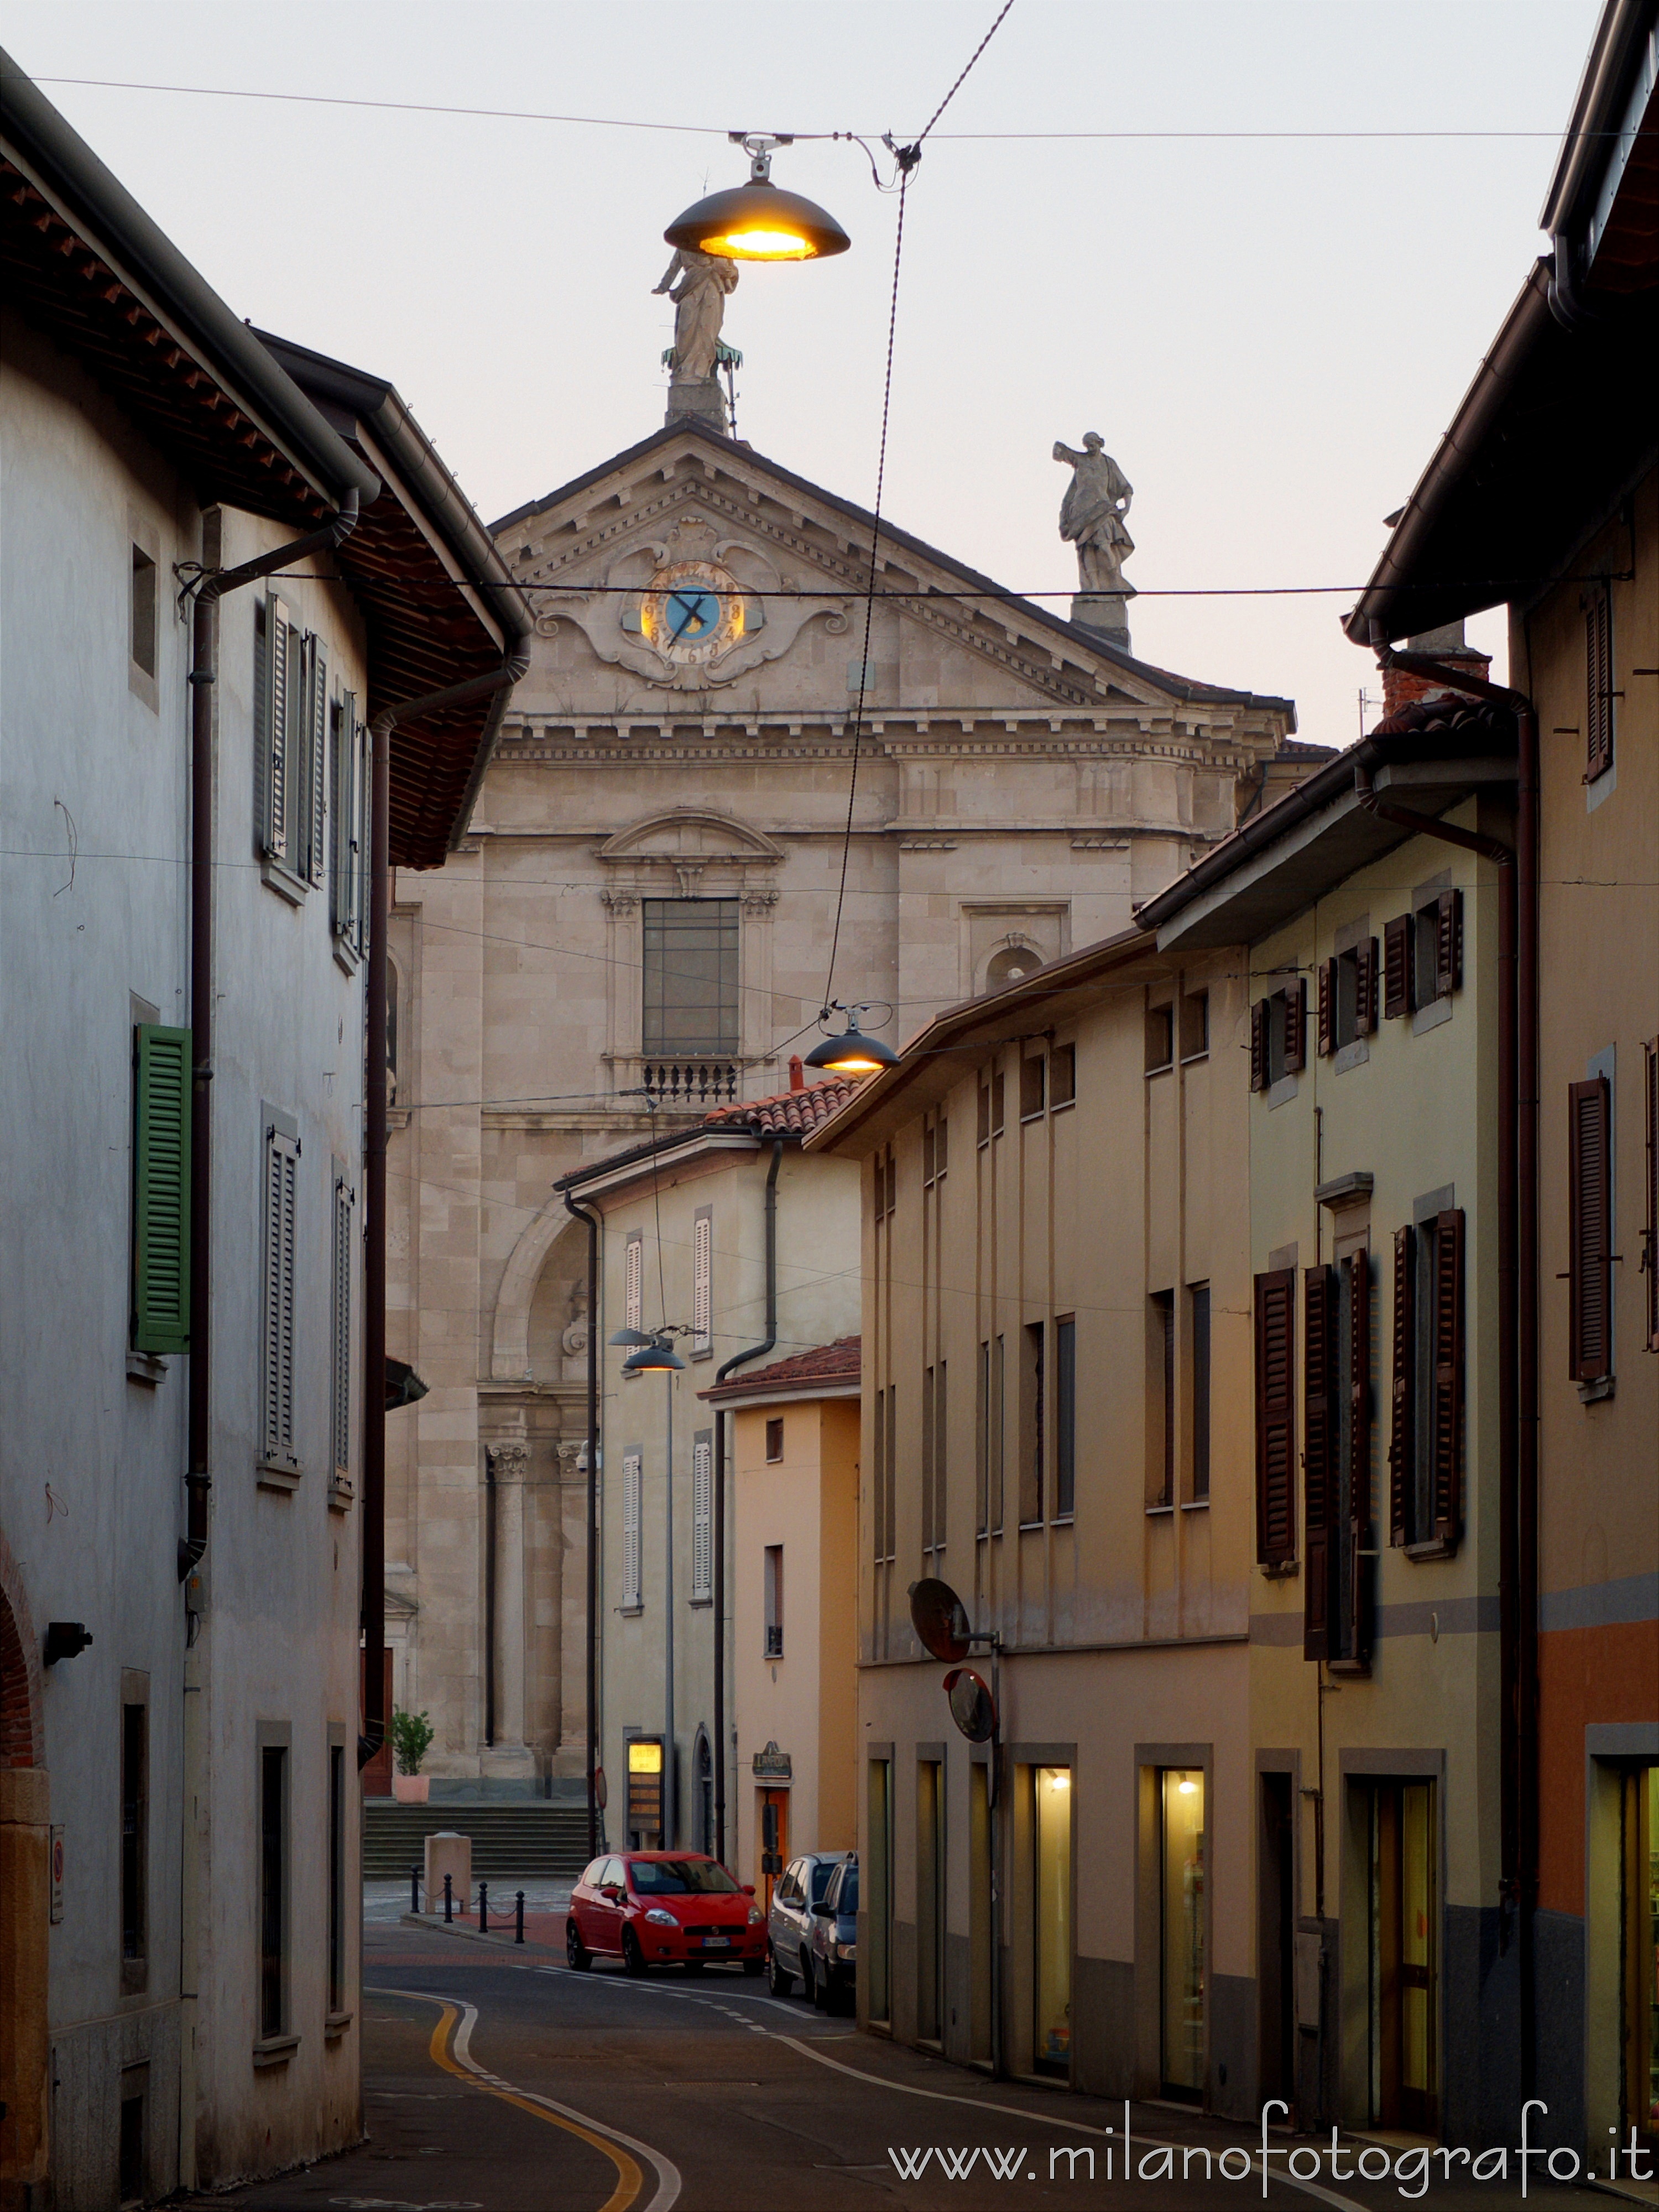 Urgnano (Bergamo): La Chiesa dei Santi Nazario e Celso in fondo alla strada all'imbrunire - Urgnano (Bergamo)